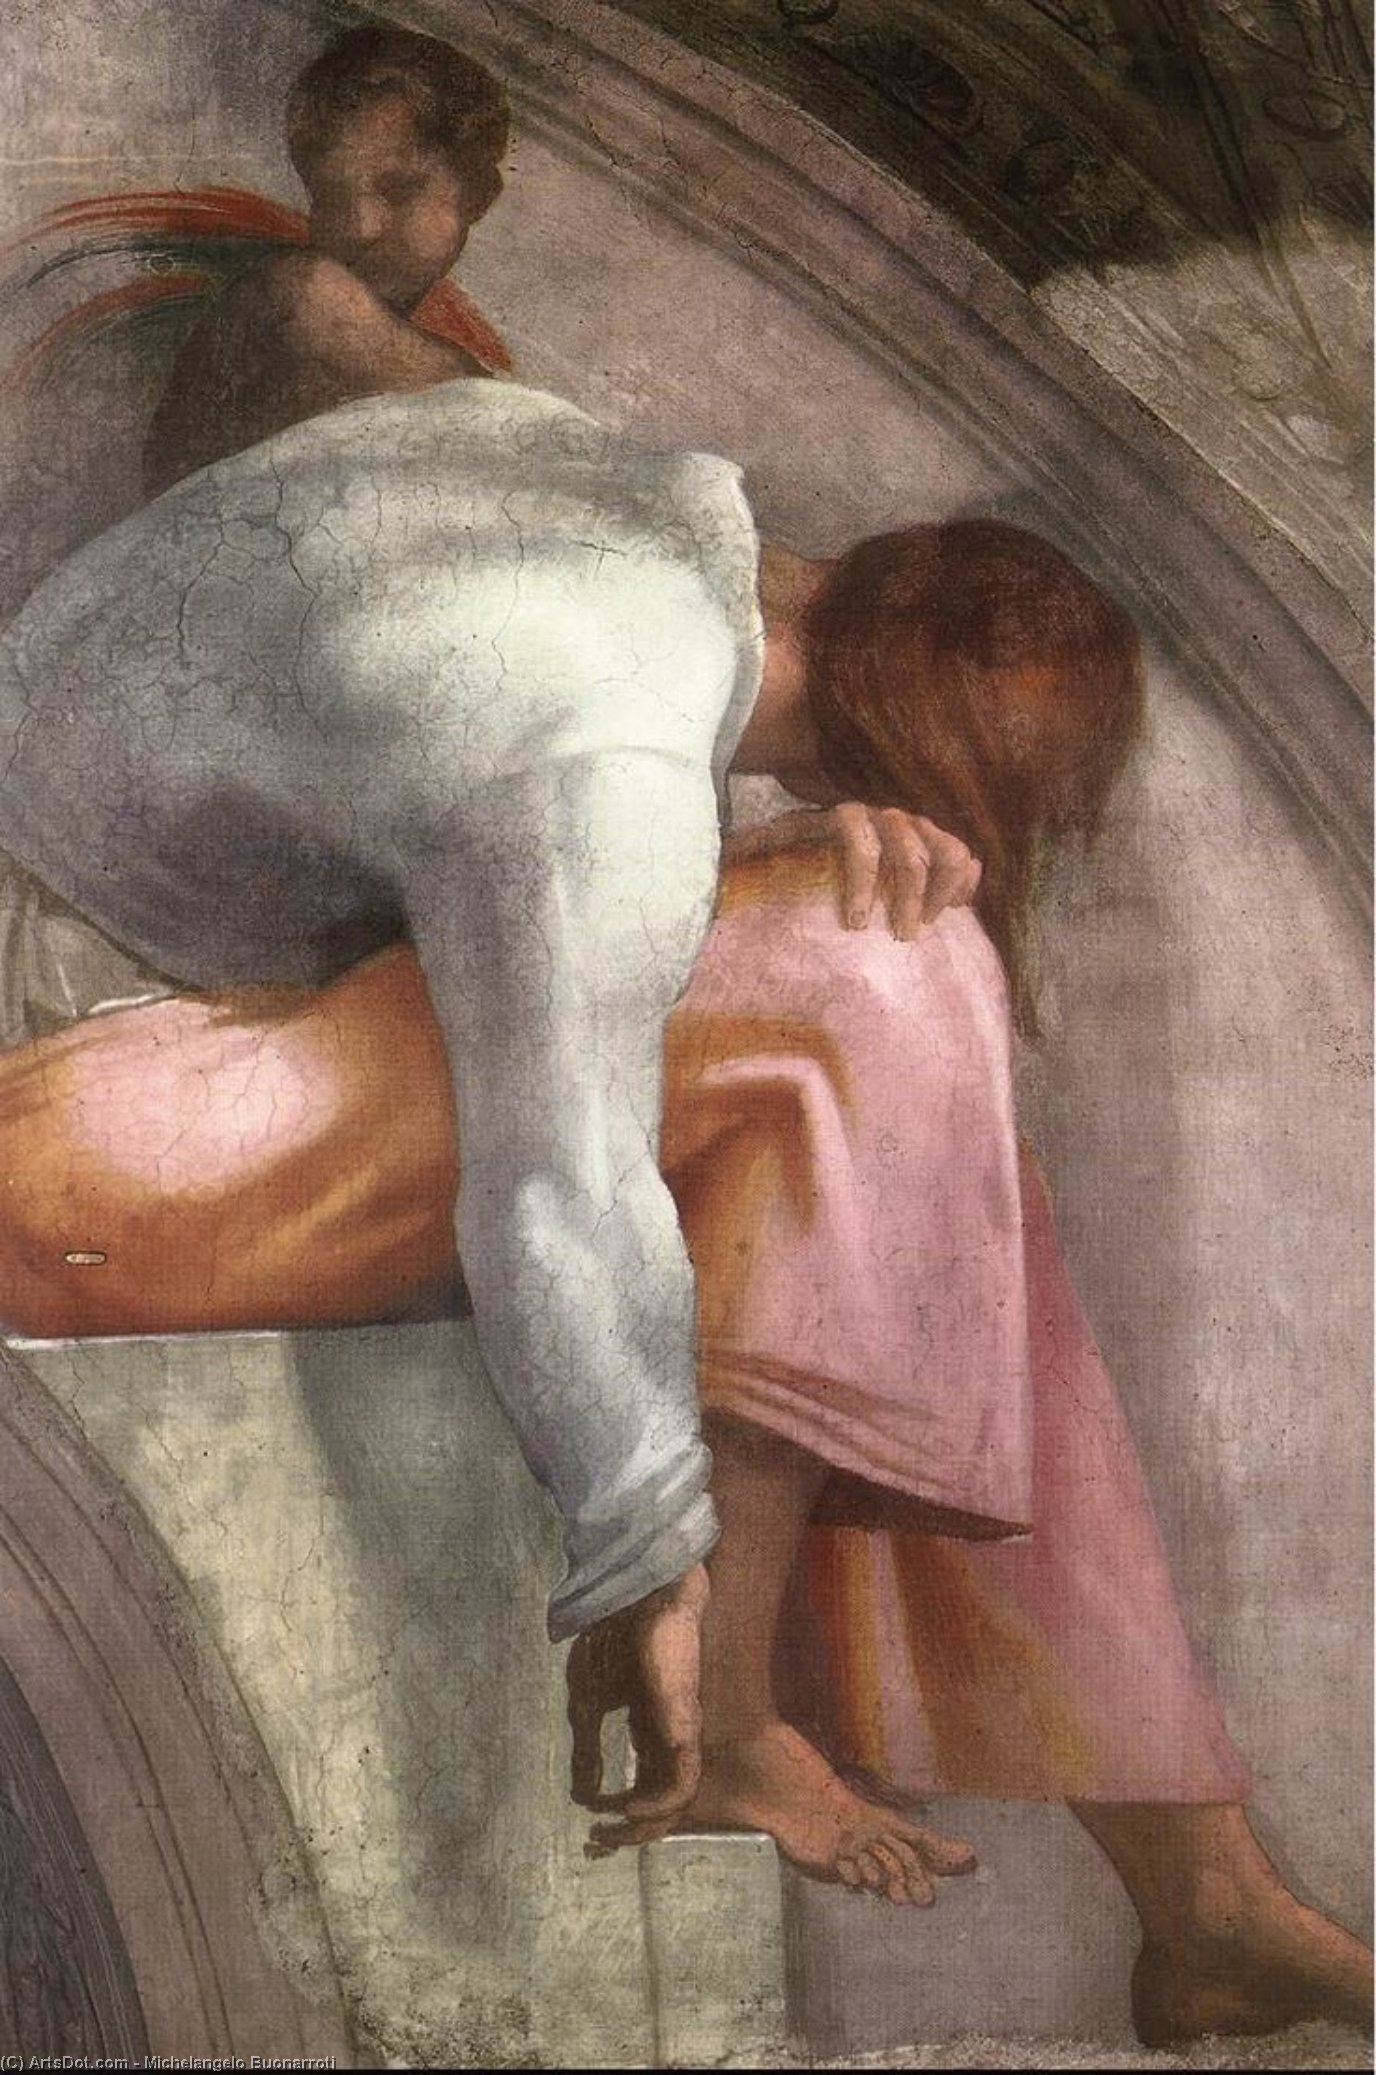 WikiOO.org - Enciklopedija likovnih umjetnosti - Slikarstvo, umjetnička djela Michelangelo Buonarroti - Rehoboam - Abijah (detail)